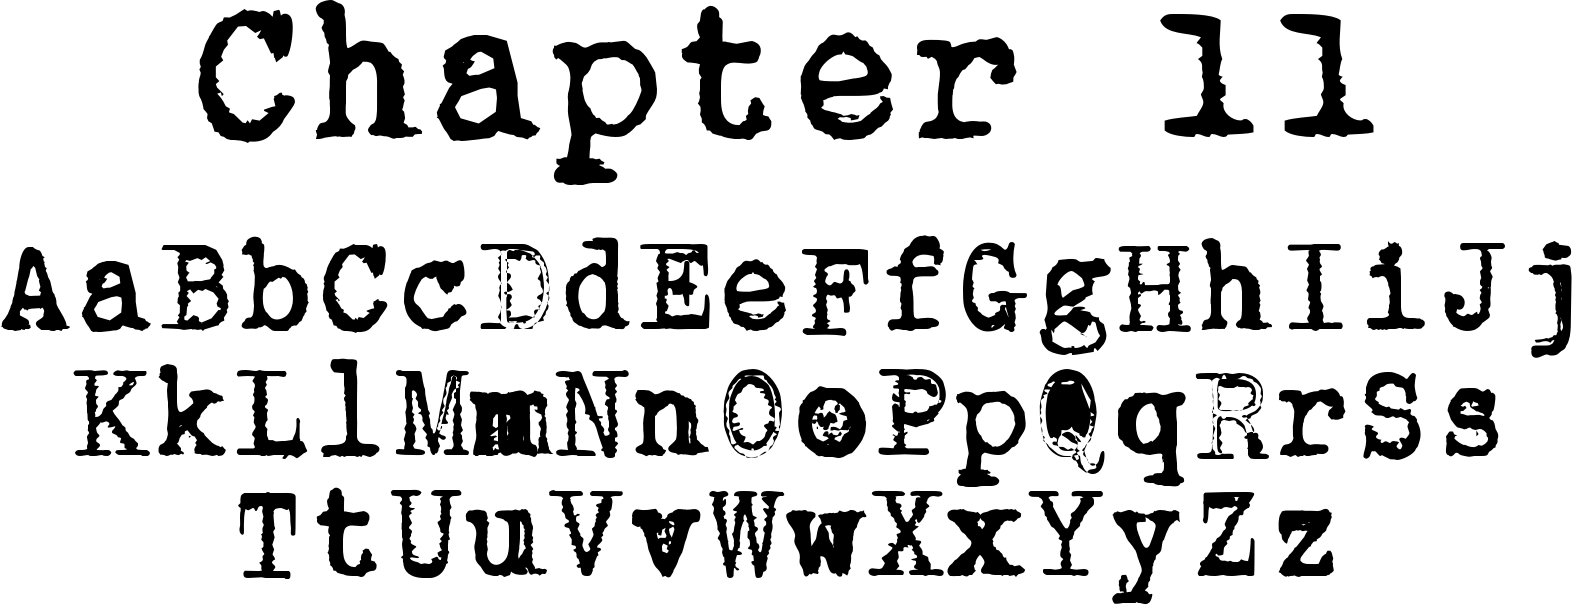 10 Cool Typewriter Fonts